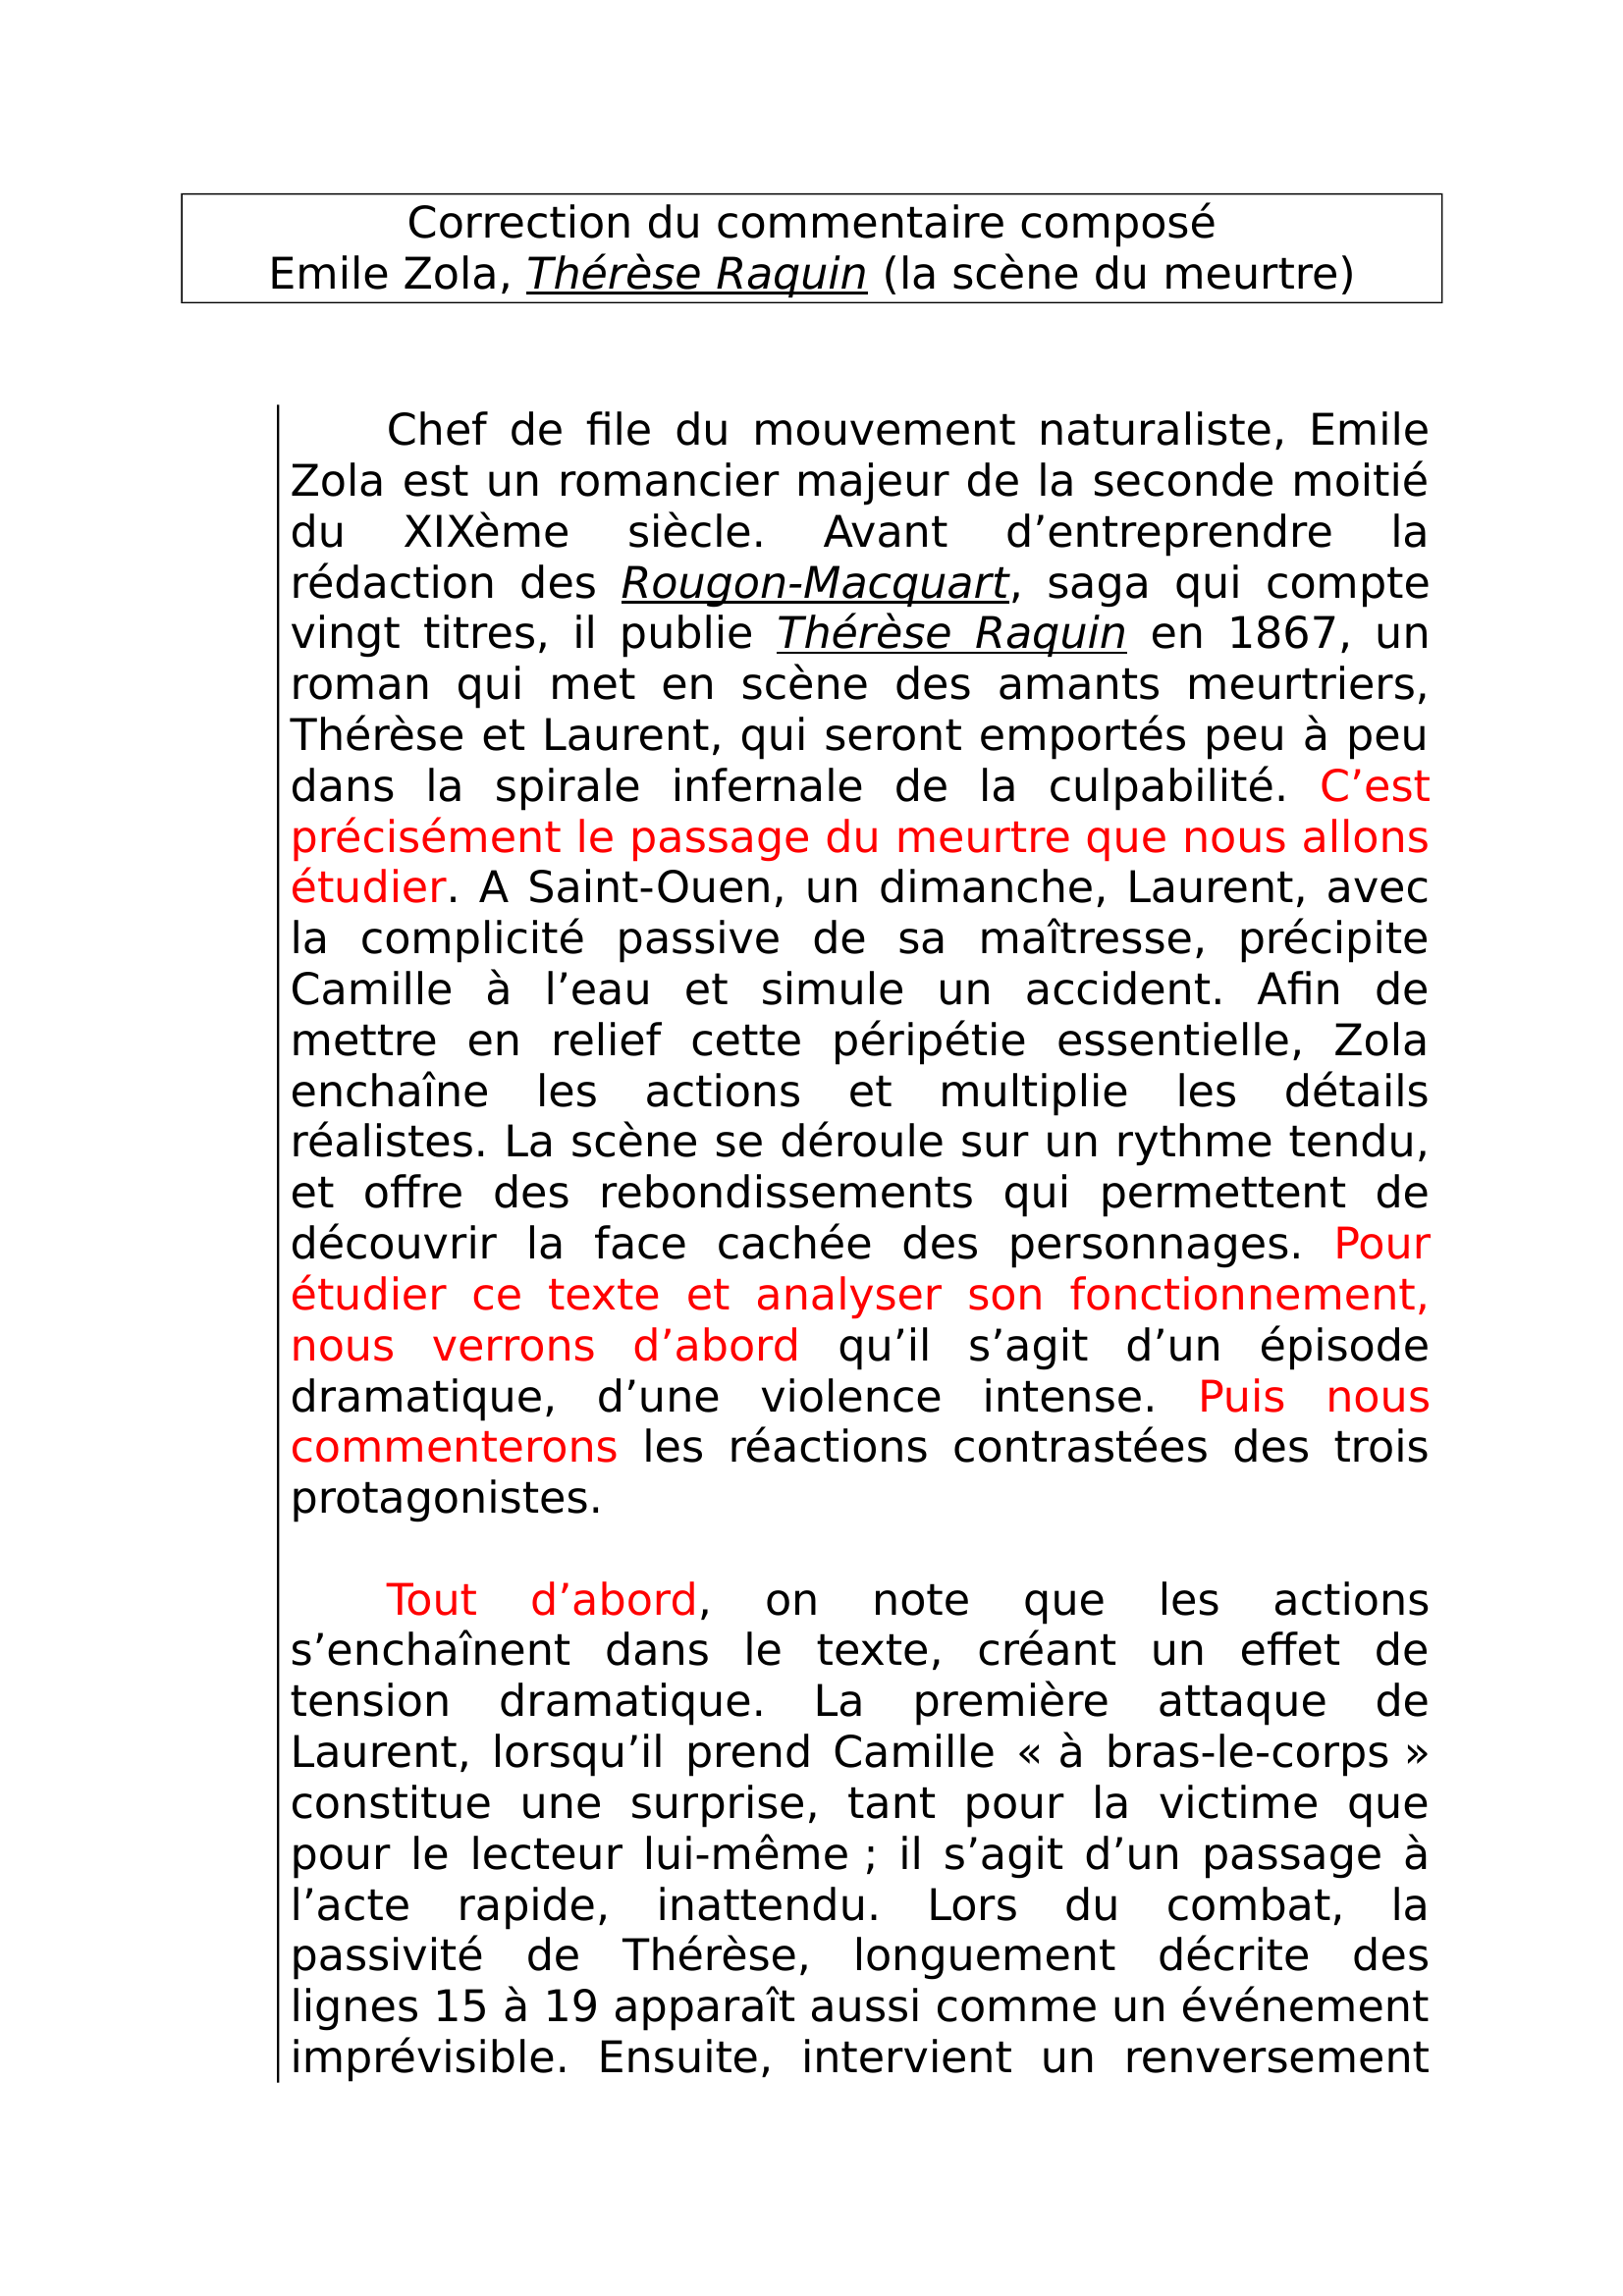 Prévisualisation du document commentaire: Emile Zola, Thérèse Raquin